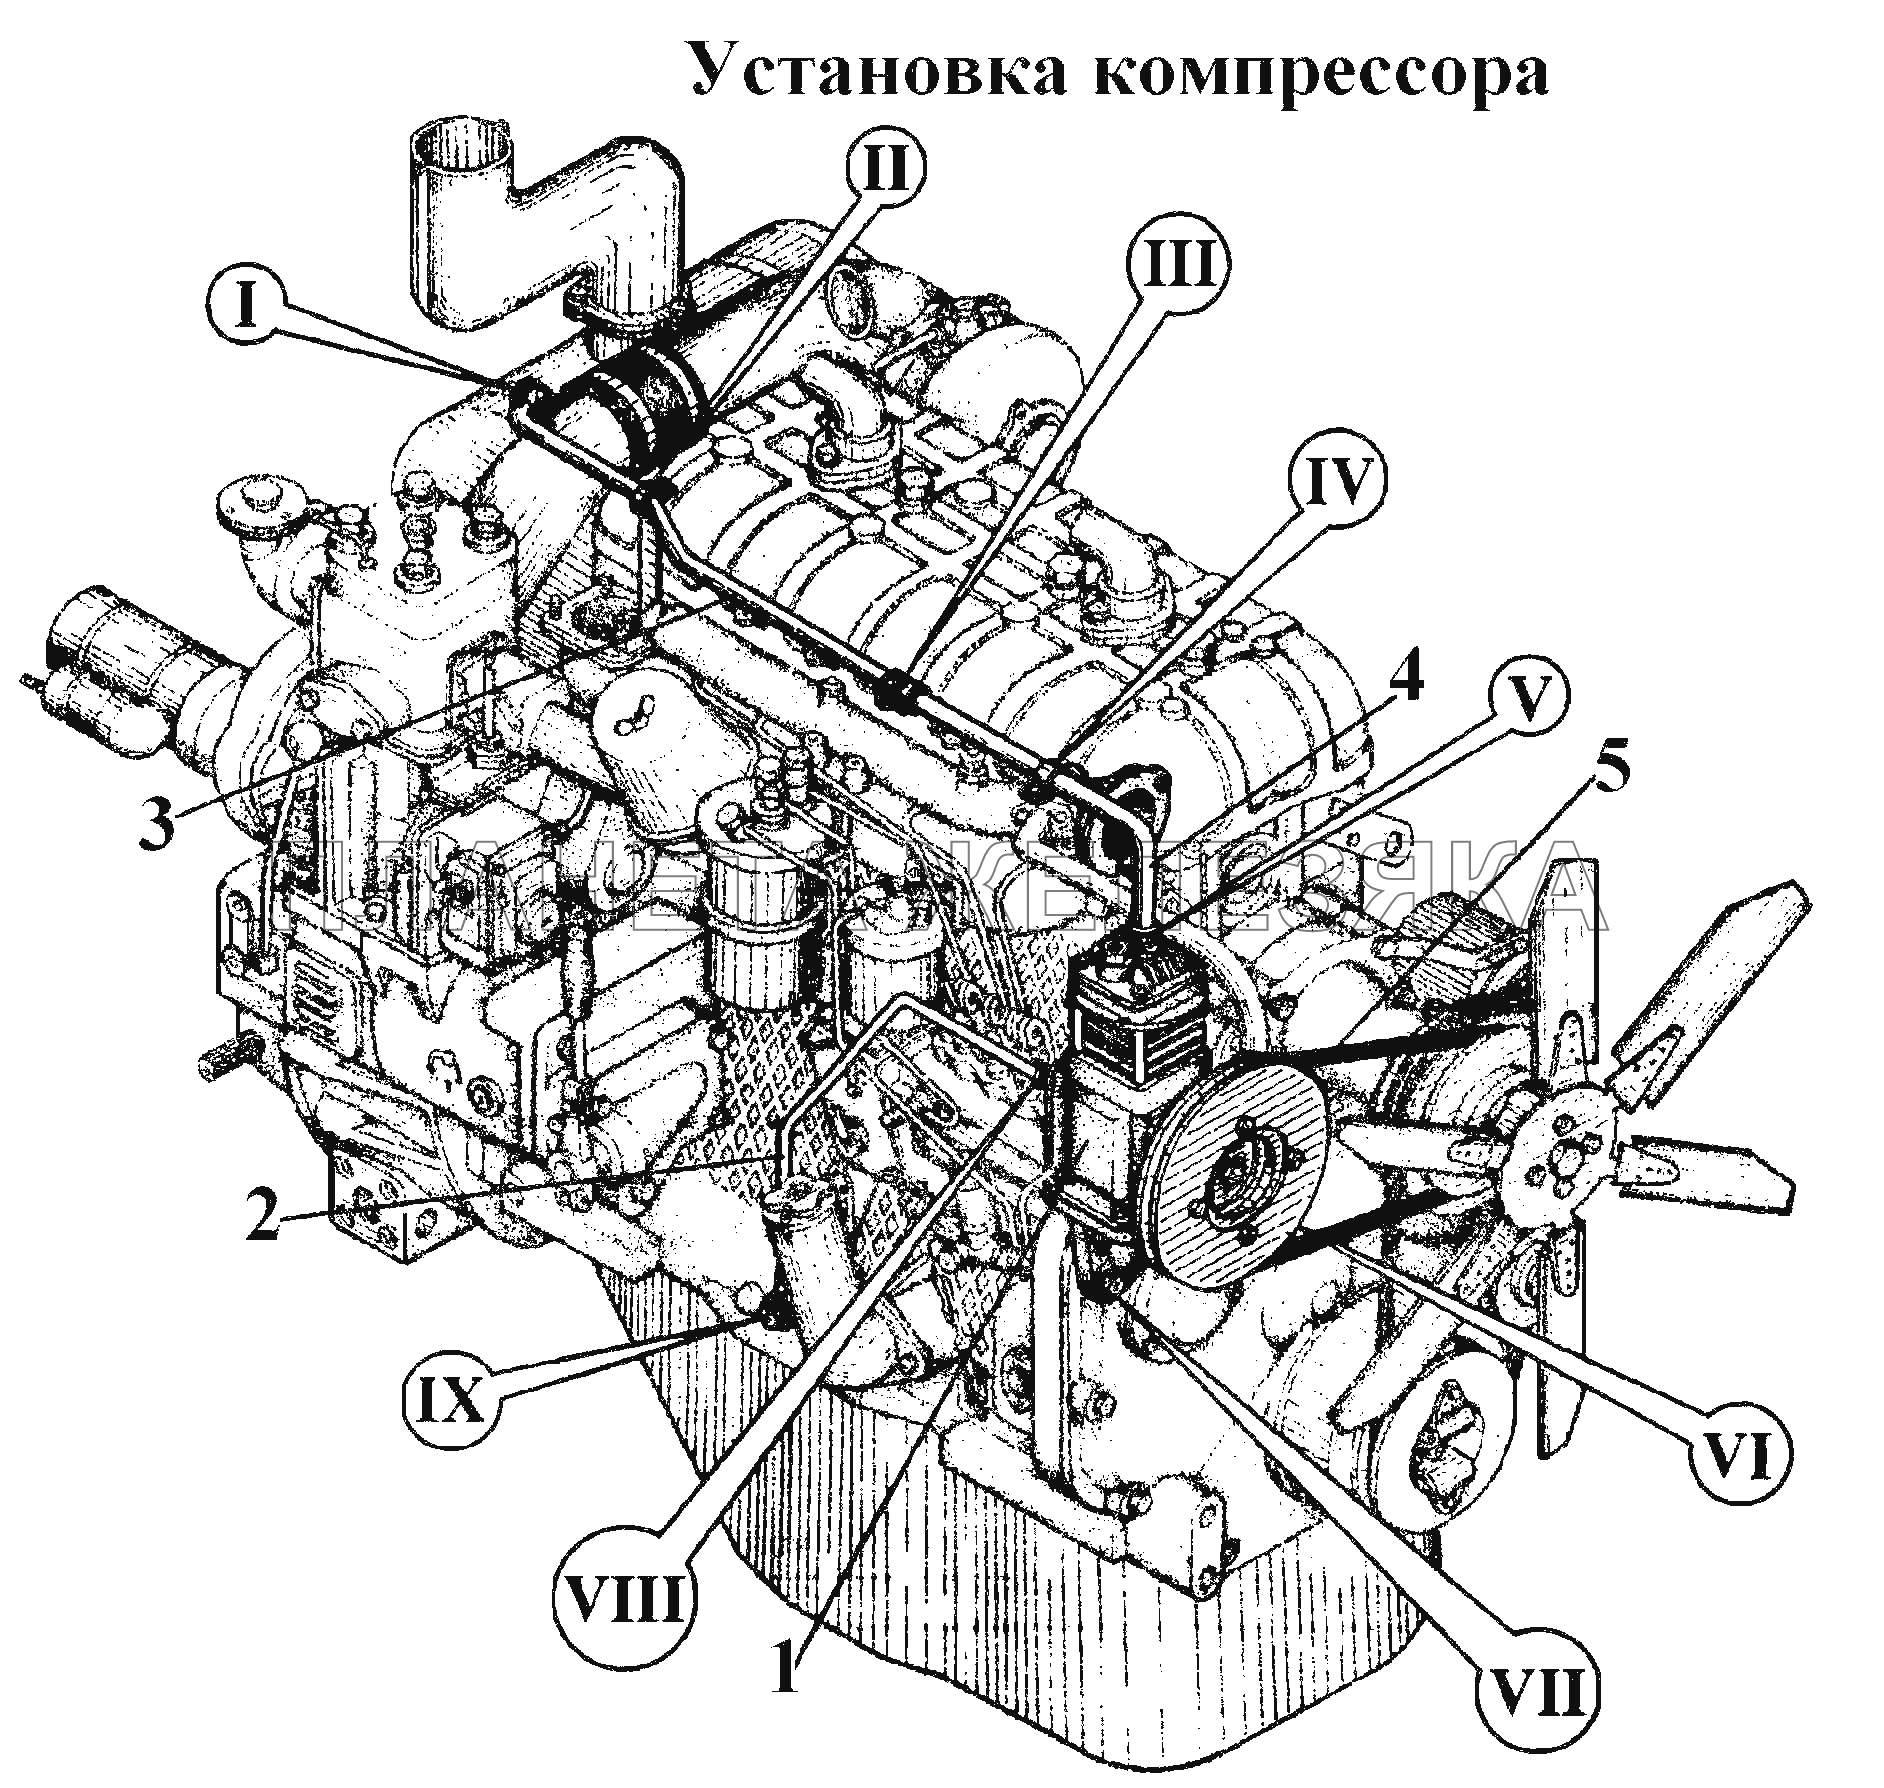 Установка компрессора ВТ-100Д